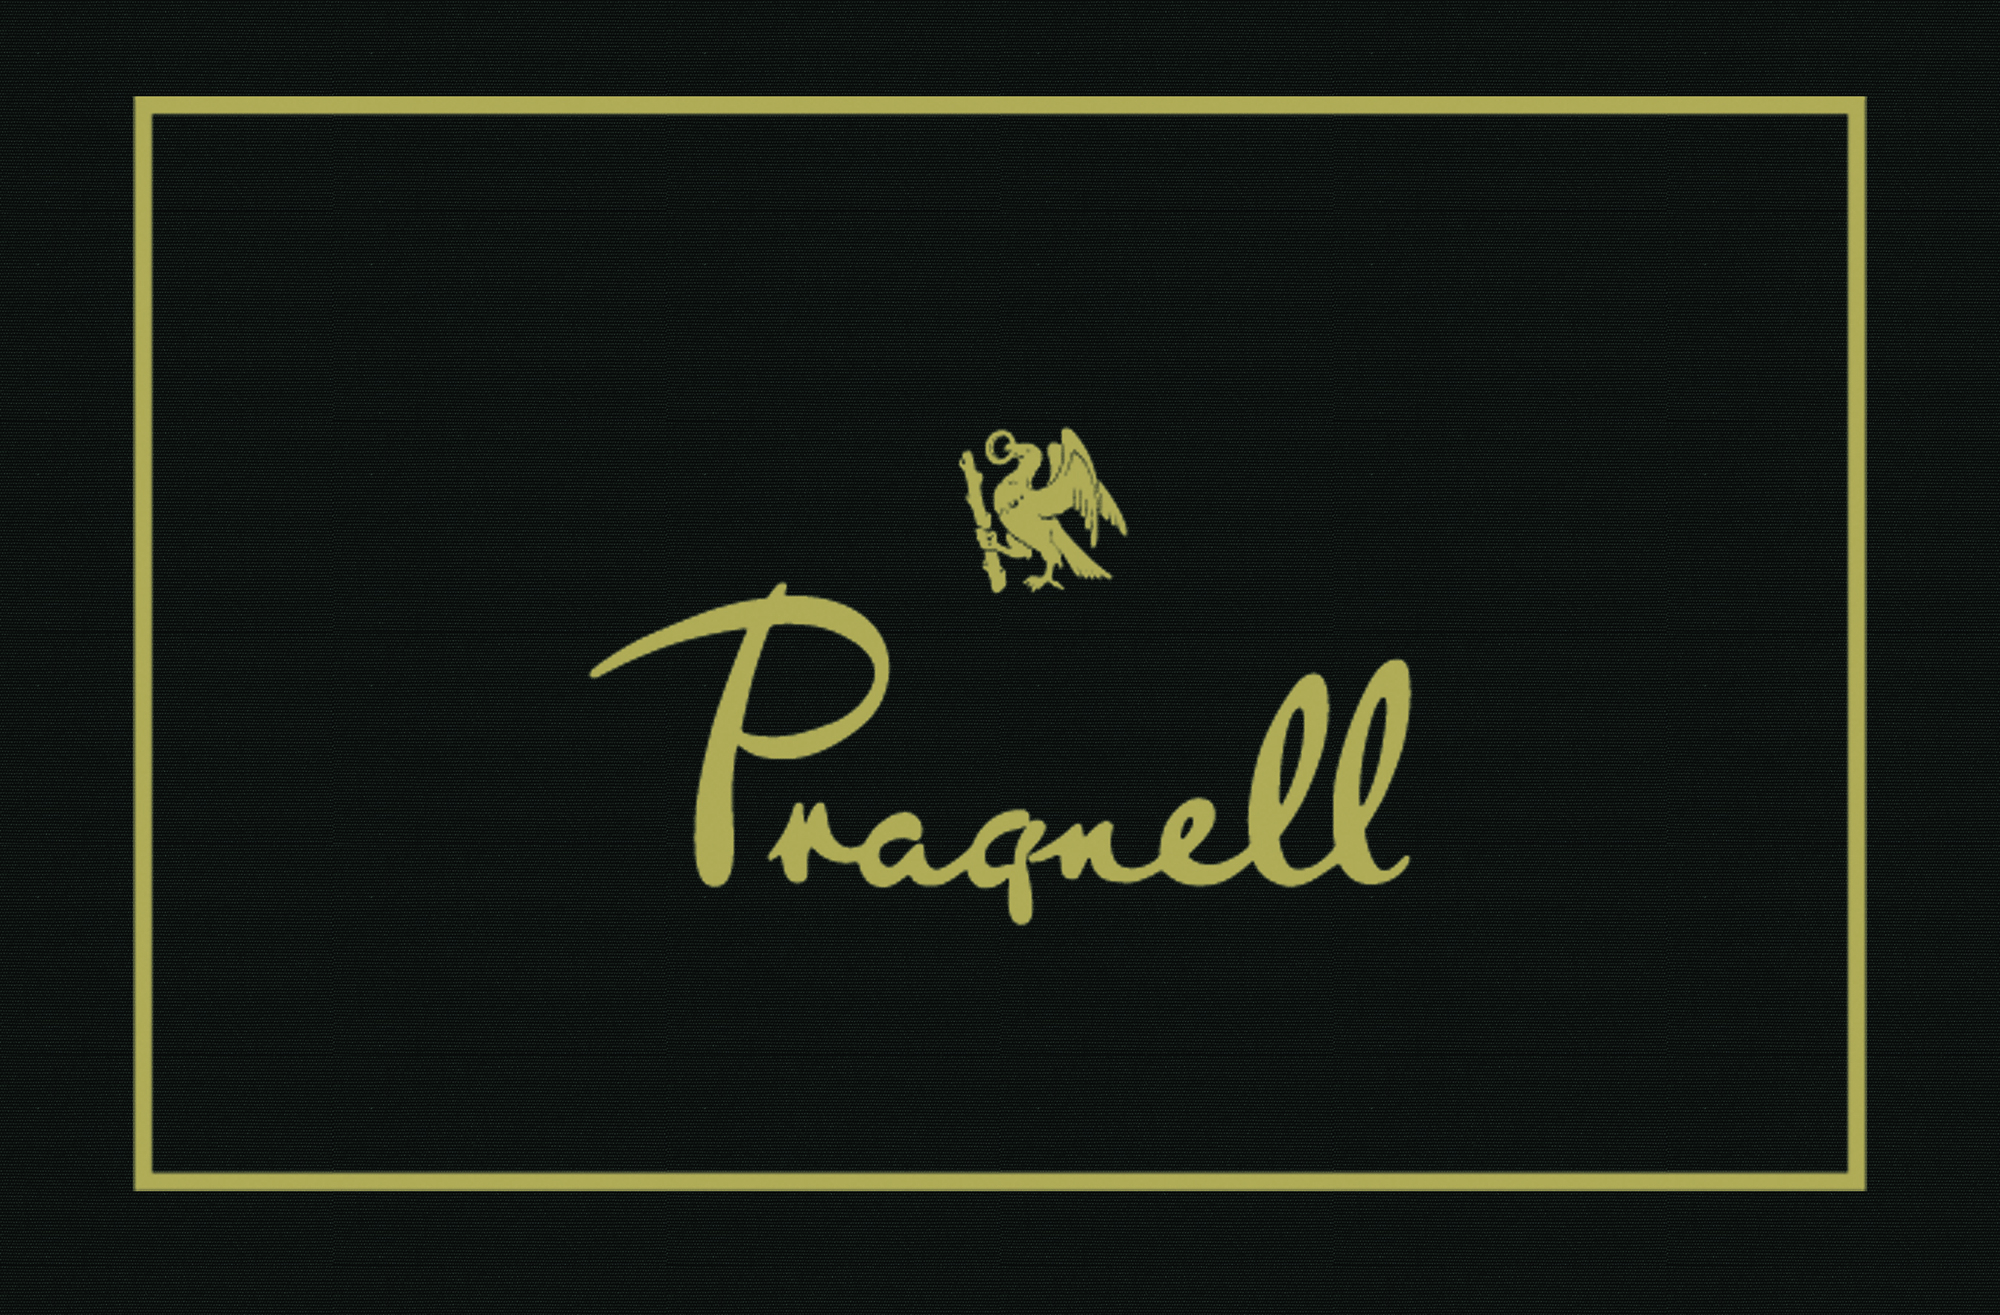 Pragnell gold leaf awning